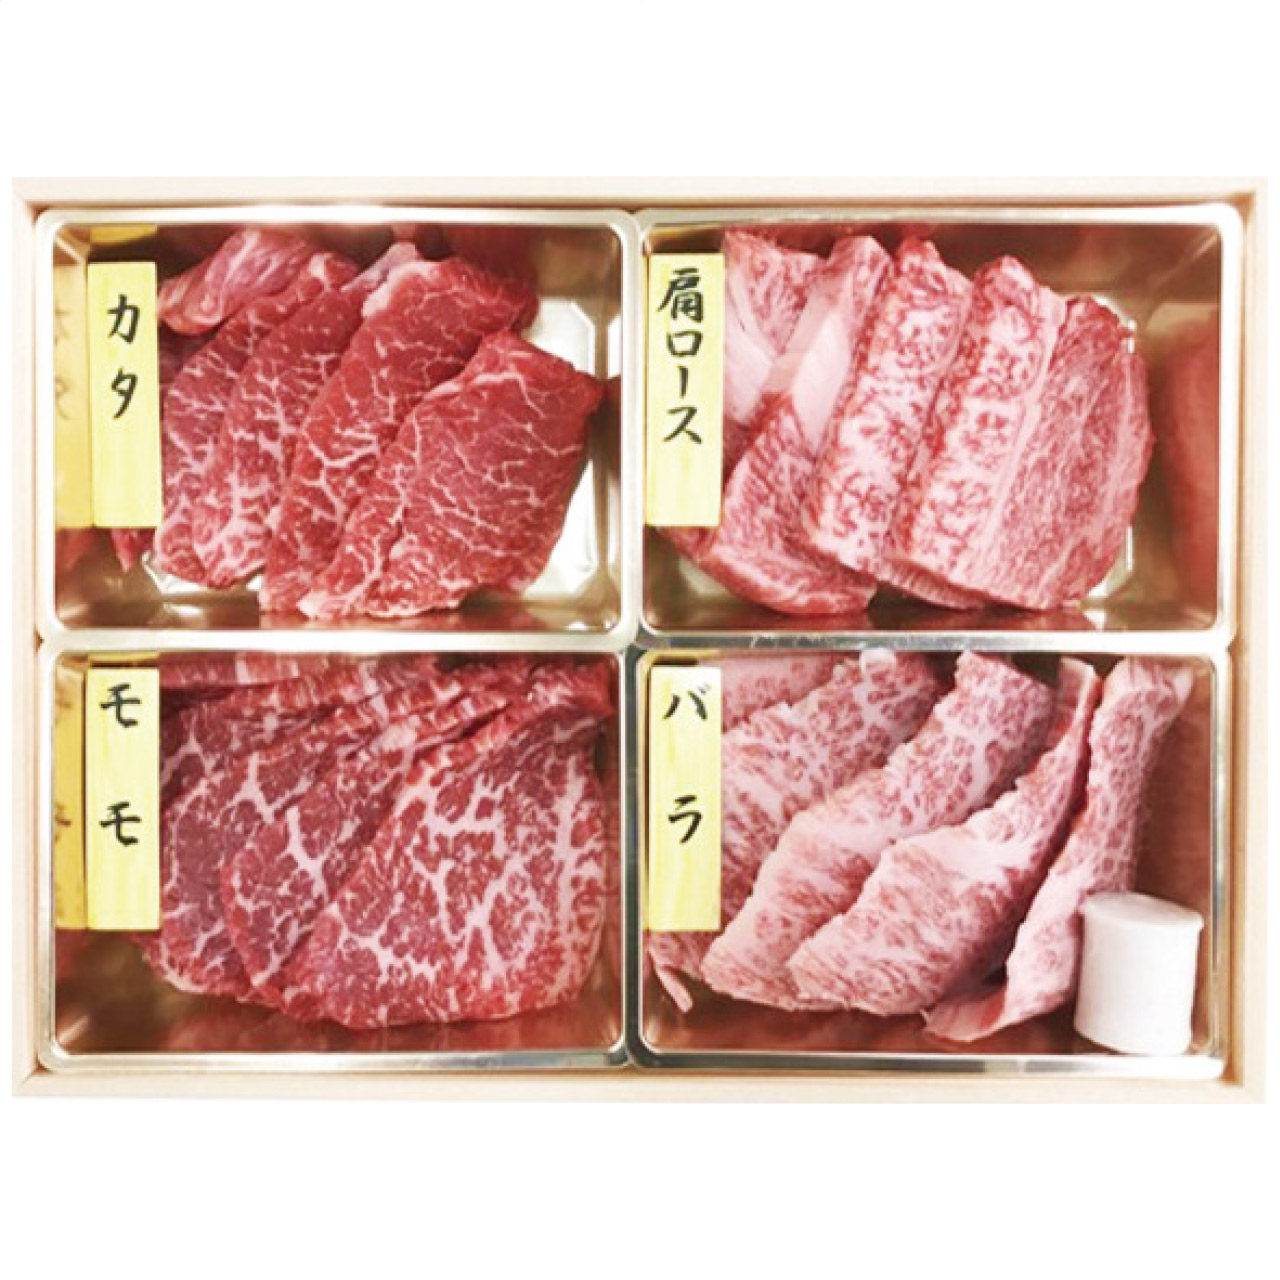 神戸牛焼肉4種盛